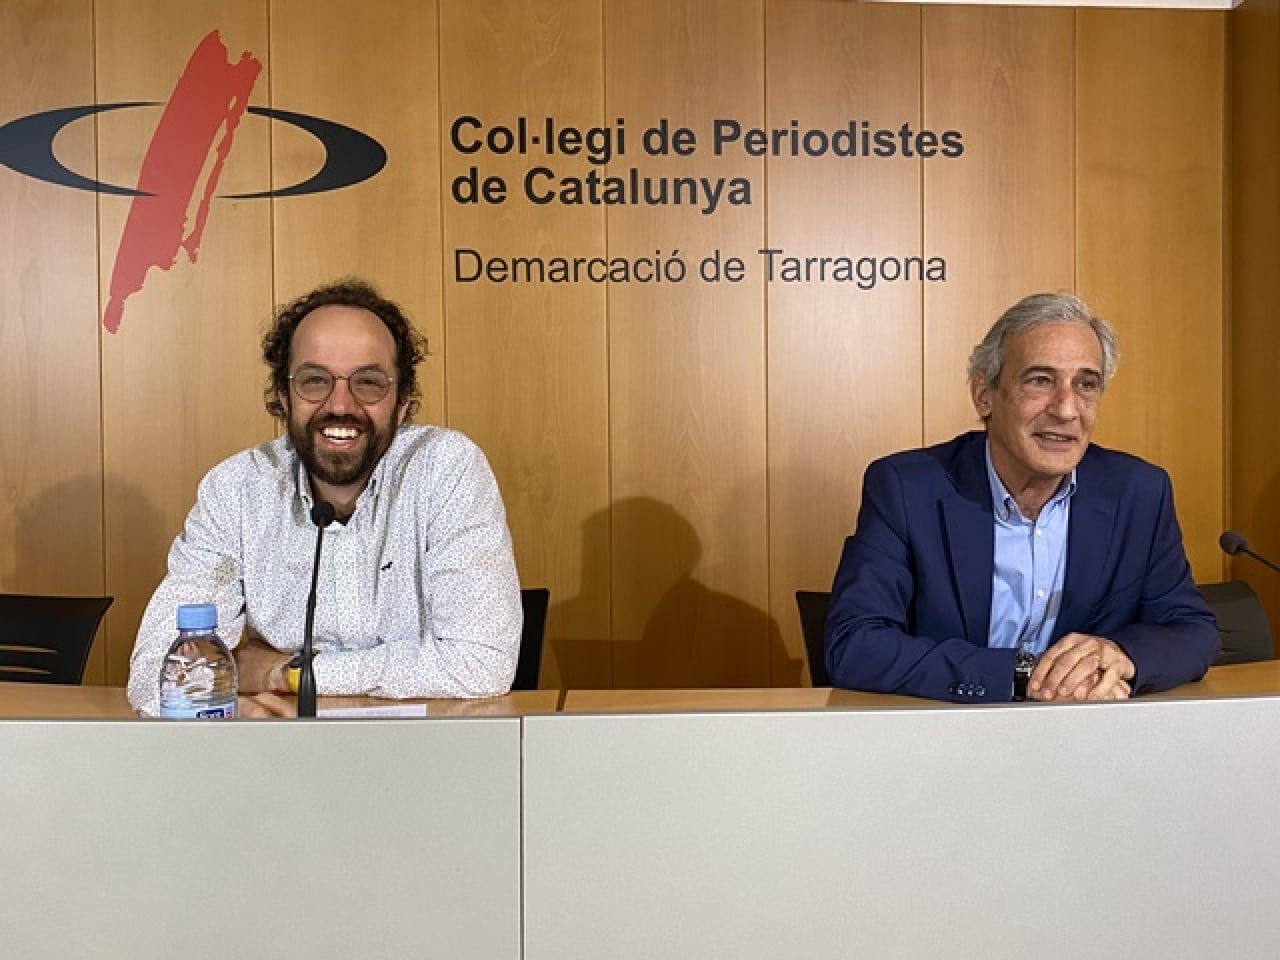 El president de la Demarcació de Tarragona del Col·legi de Periodistes, Esteve Giralt, i el responsable de Comunicació i de Relacions Externes de Repsol a Tarragona, Josep Bertran, han presentat el cicle